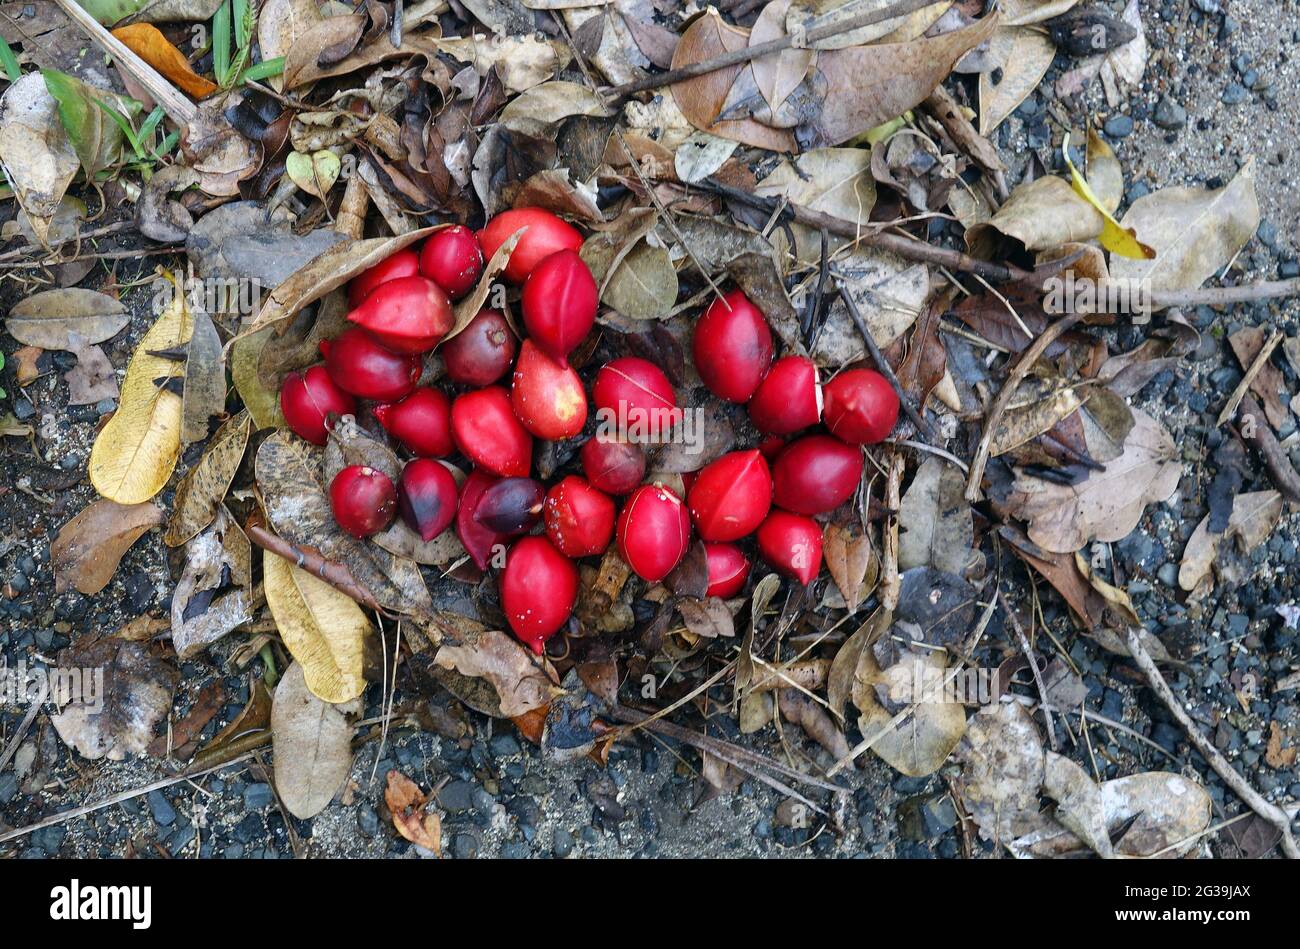 Fruits en merisier rouge (Ochromia elliptica), île Lord Howe, Nouvelle-Galles du Sud, Australie Banque D'Images